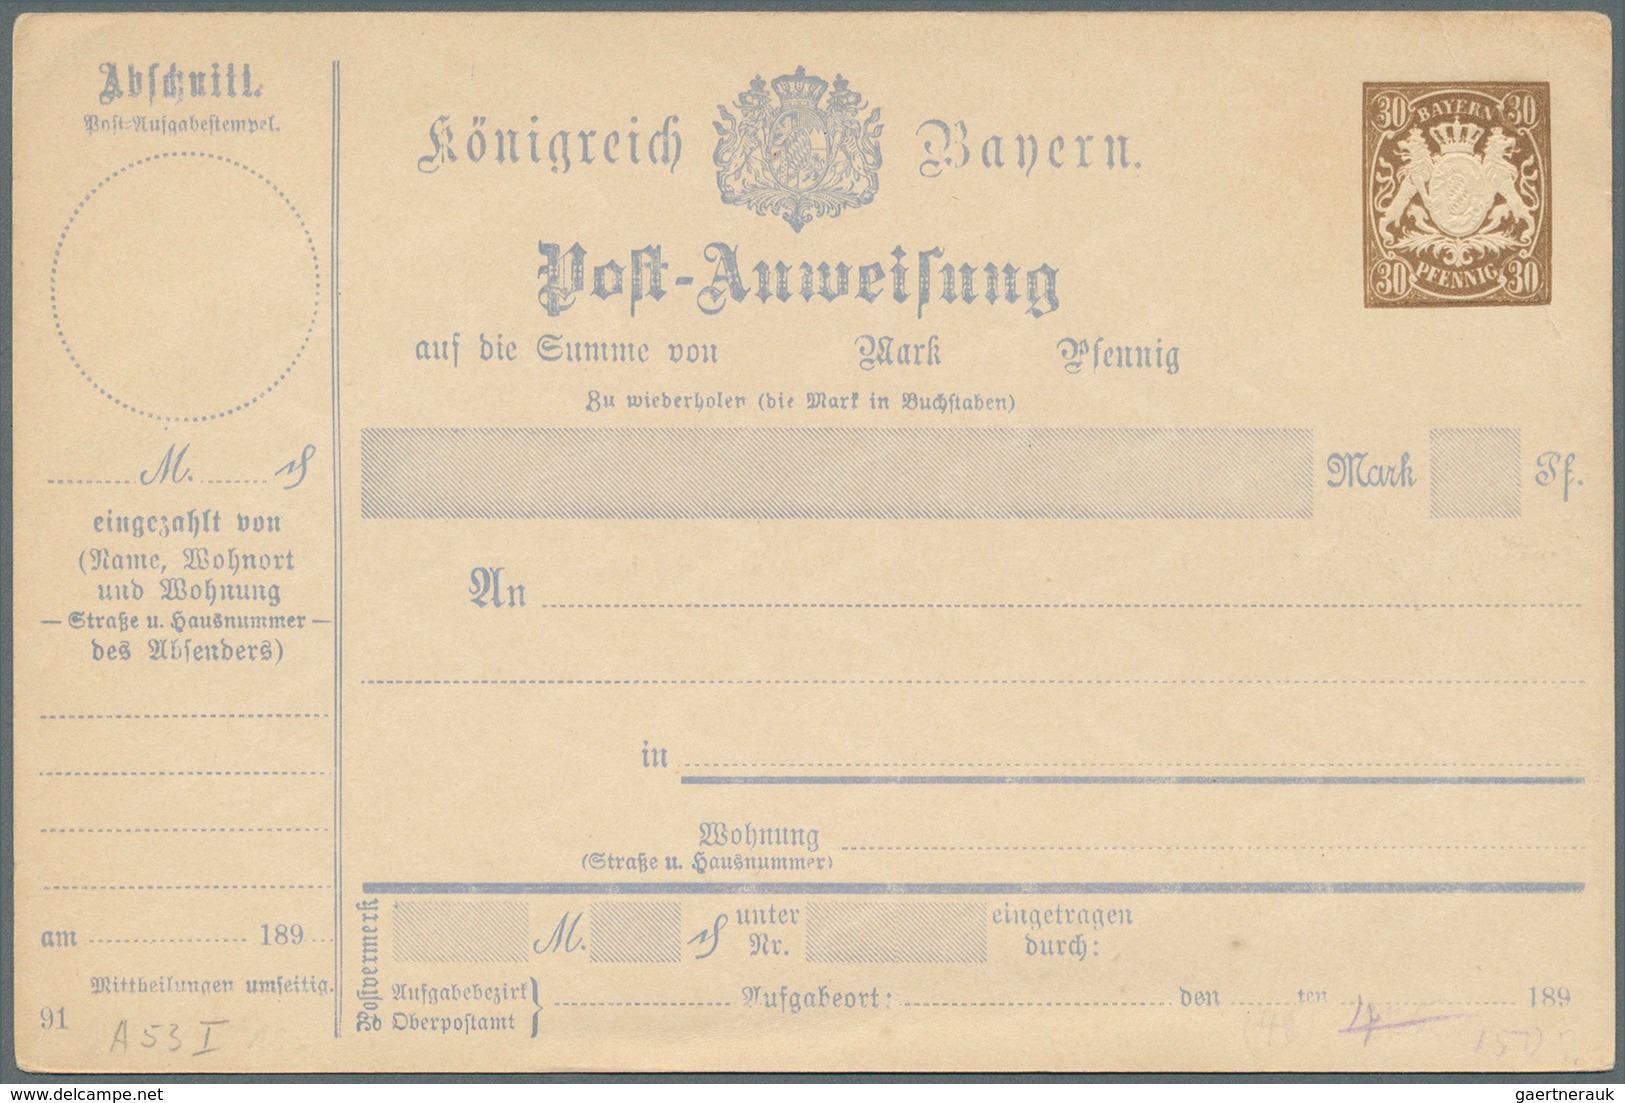 31232 Bayern - Ganzsachen: 1874/1920, Sauberer Posten von über 90 ungebrauchten Ganzsachen in frischer Erh